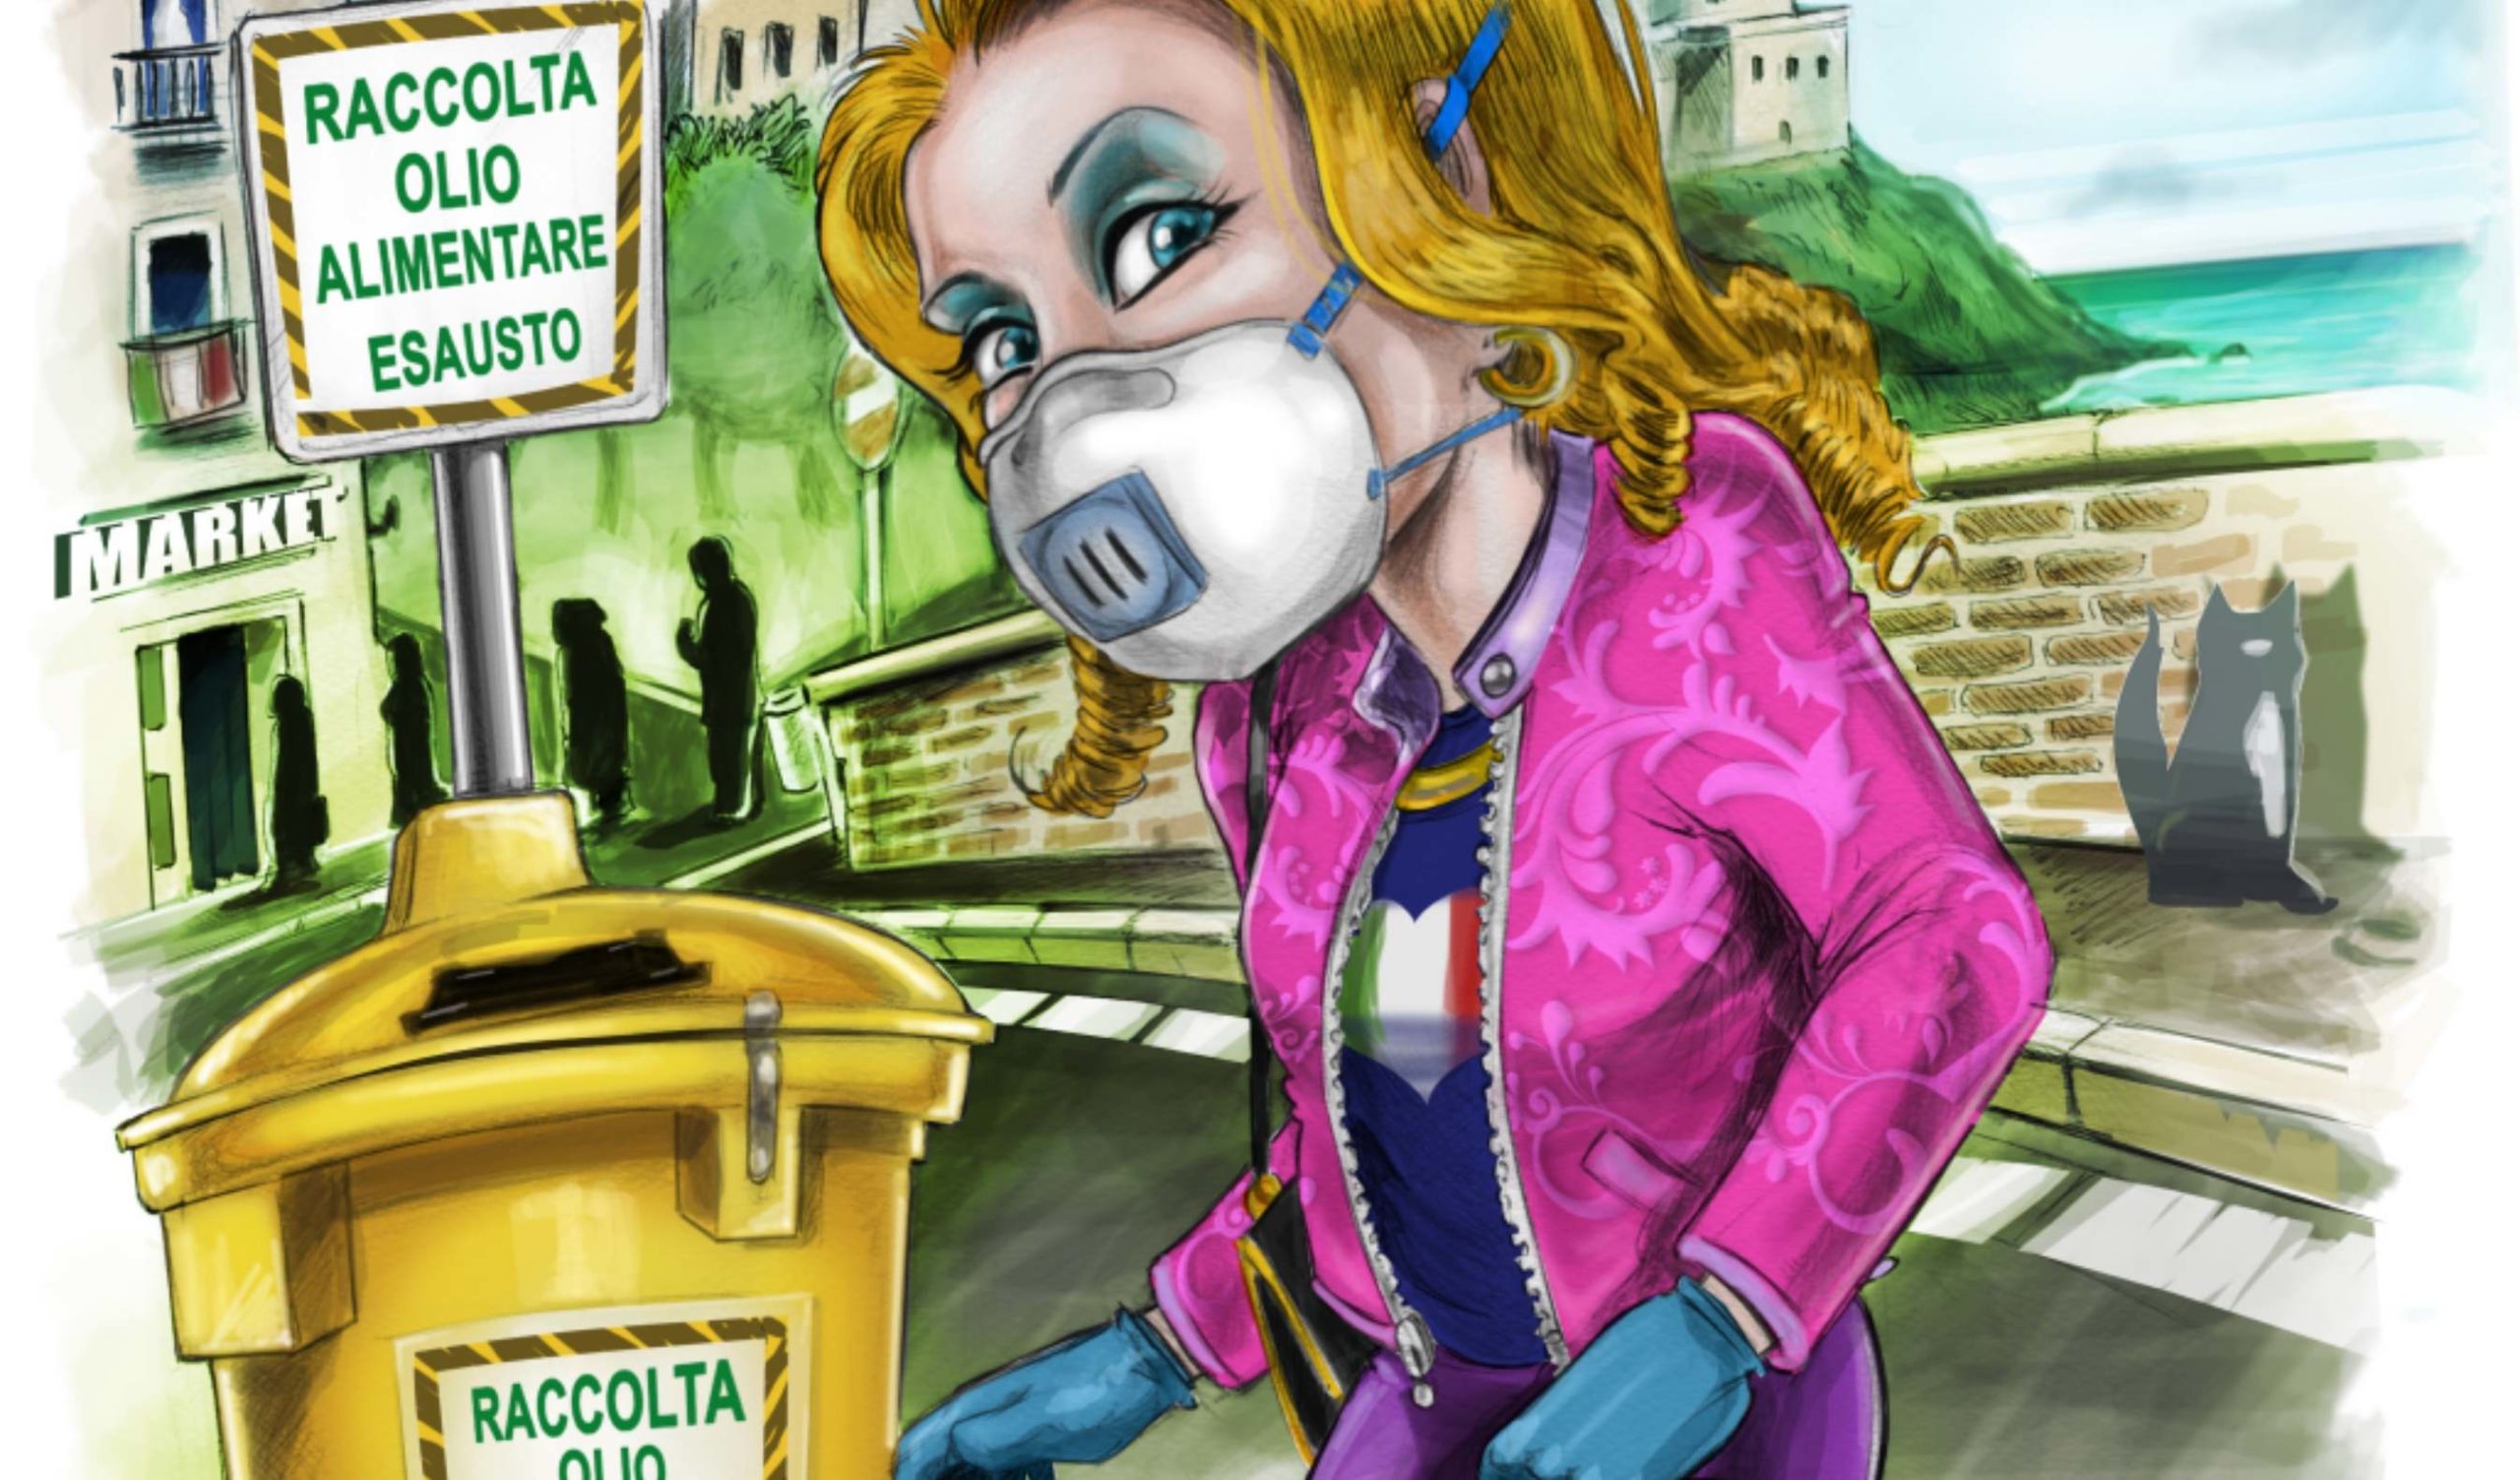 Buttare la spazzatura non è mai stato così bello!”: la vignetta di Adriatica Oli